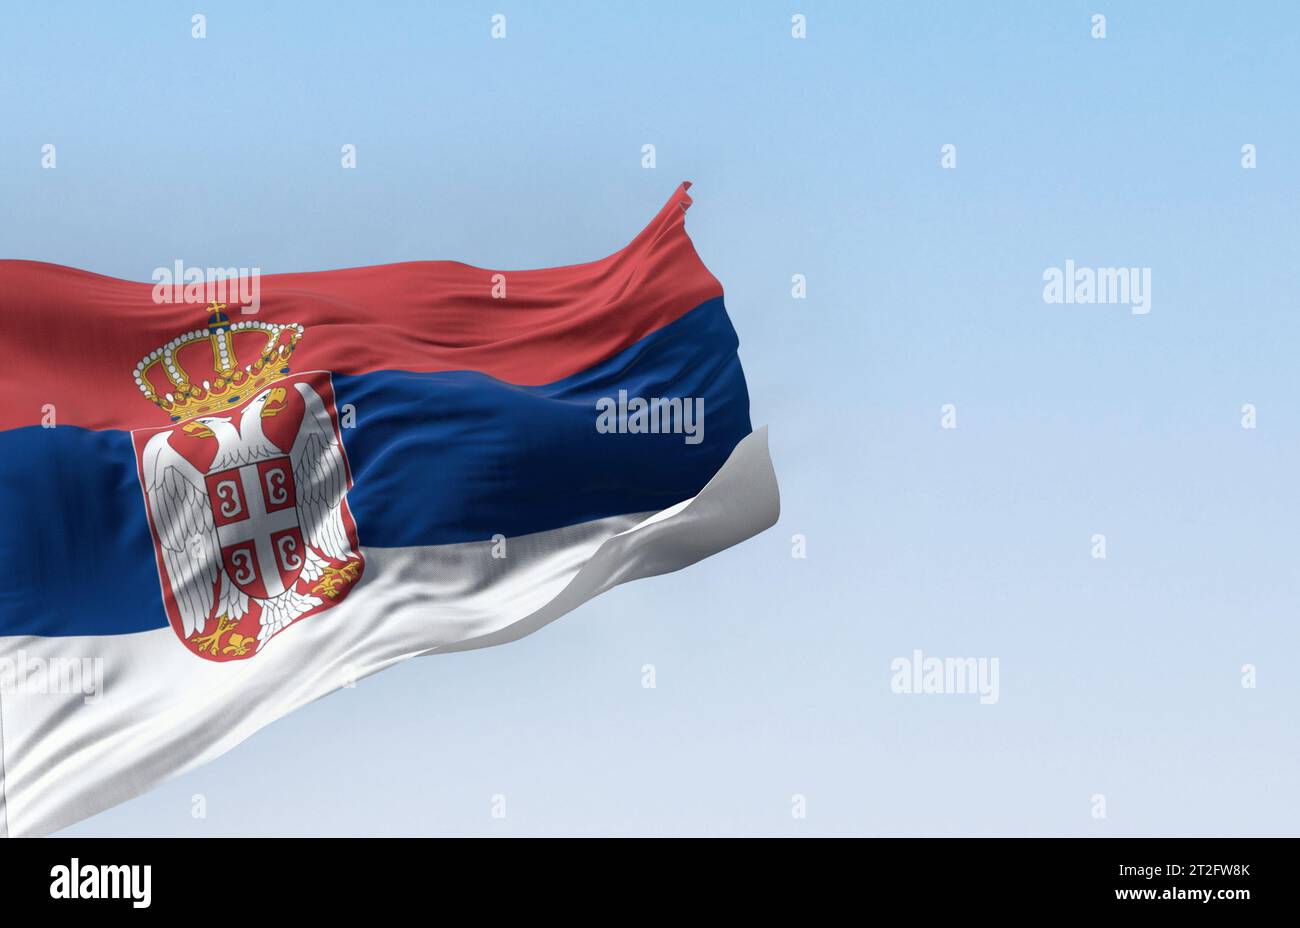 Bandiera nazionale serba che sventola nel vento in una giornata limpida. Bande rosse, blu e bianche, con stemma serbo a sinistra del centro. illustrati 3d. Foto Stock